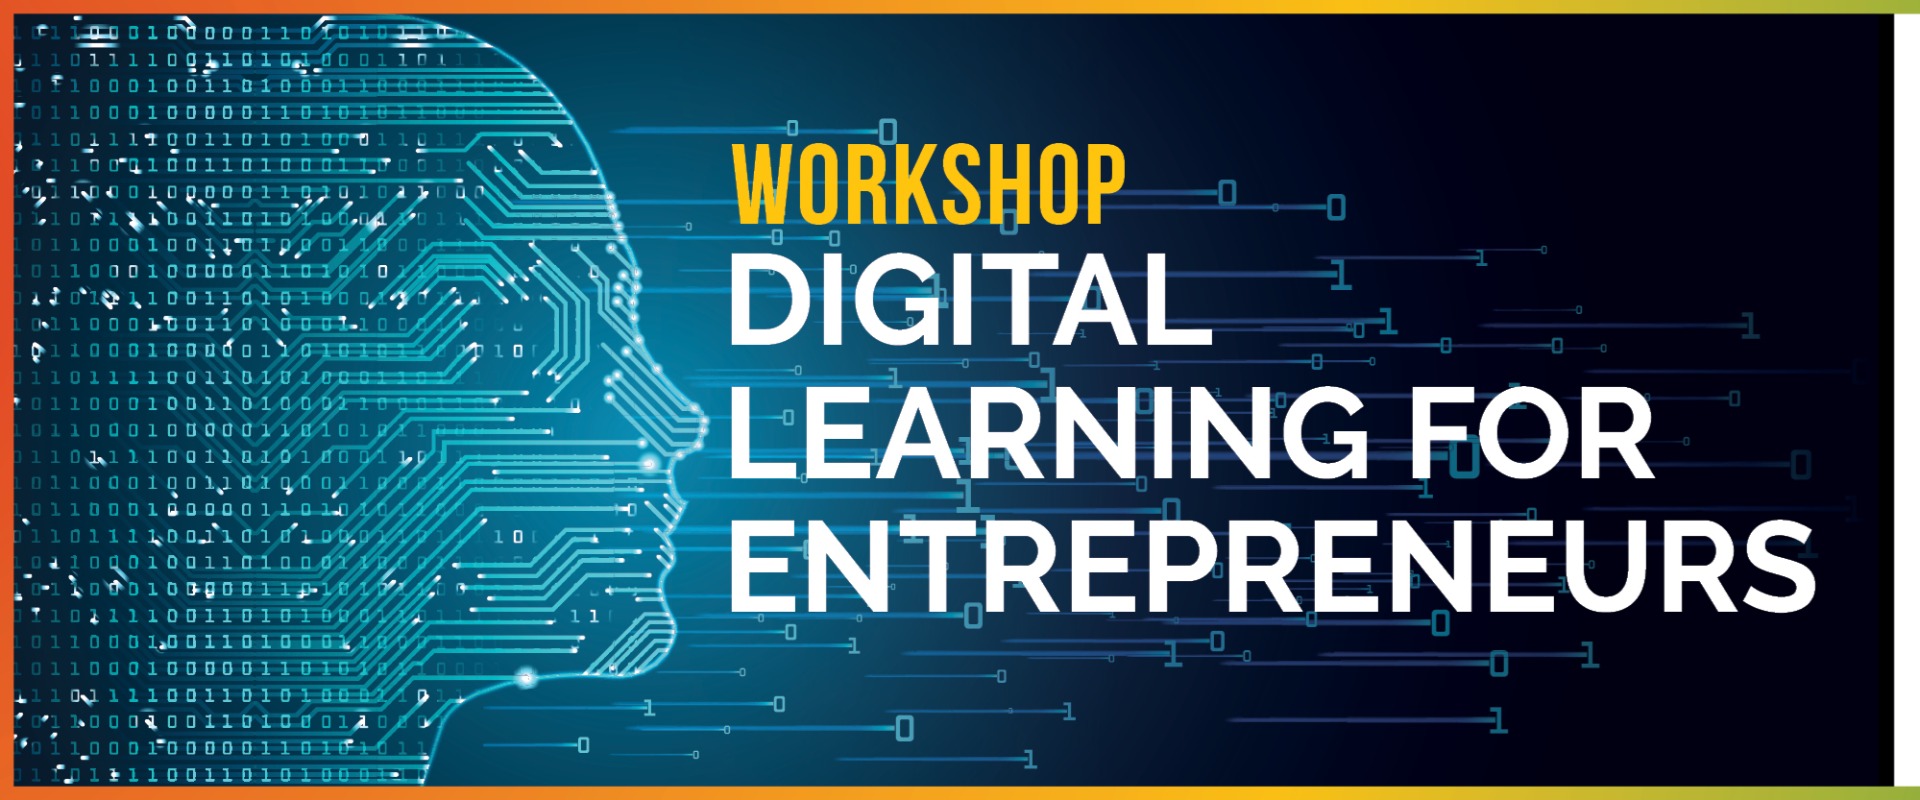 Register for the Digital Learning for Entrepreneurs Workshop